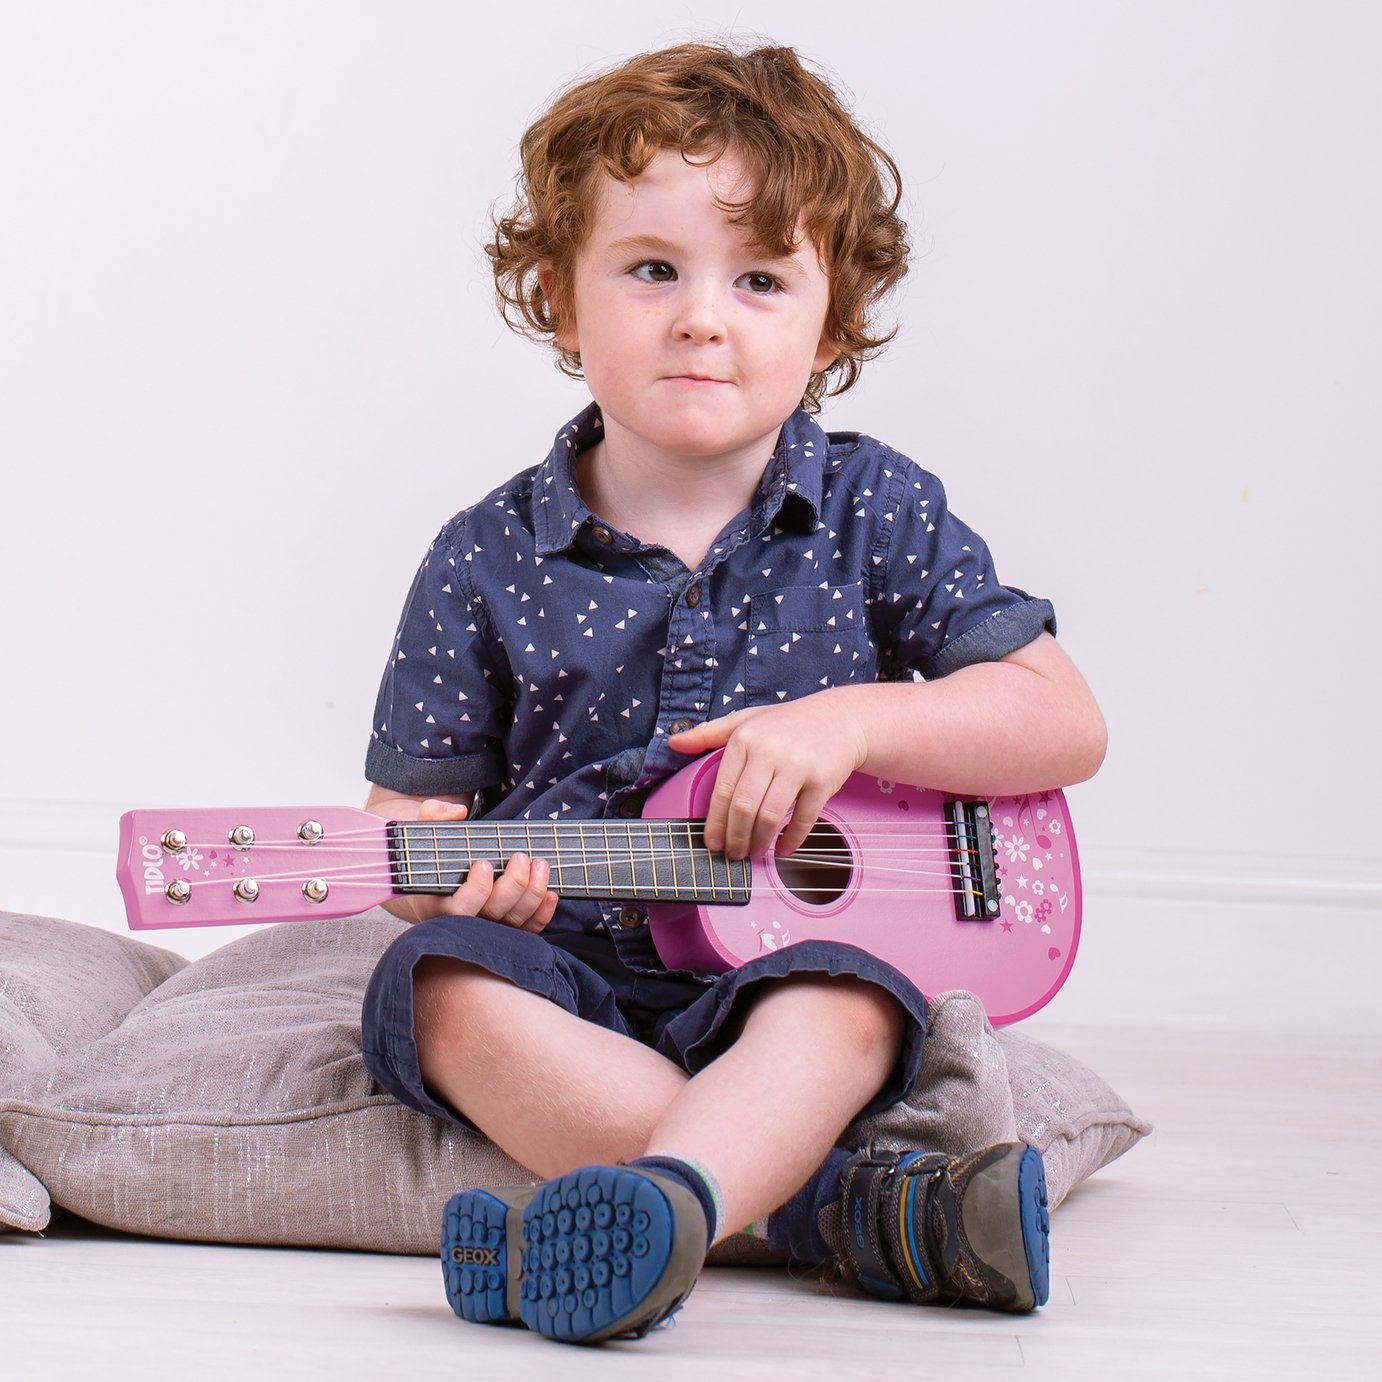 Tildo Pink Wooden Guitar Review